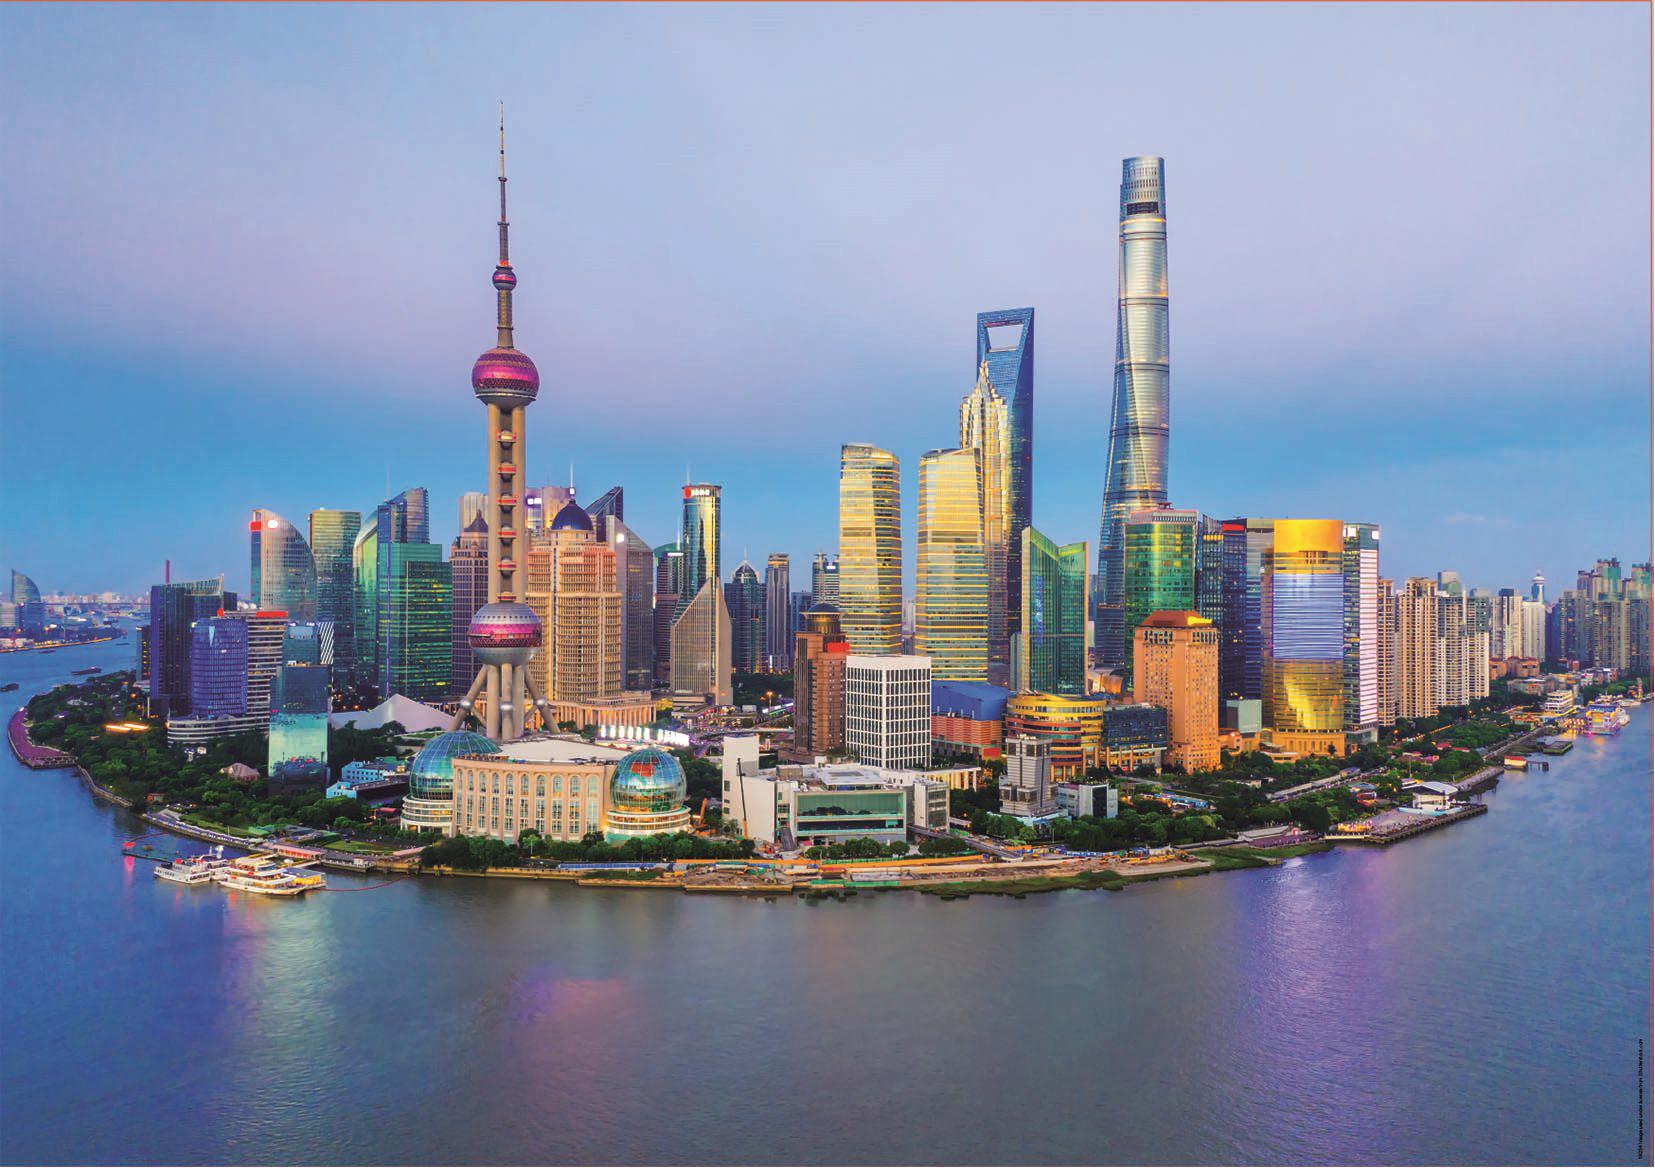 Puzzle Skyline van Shanghai bij zonsondergang